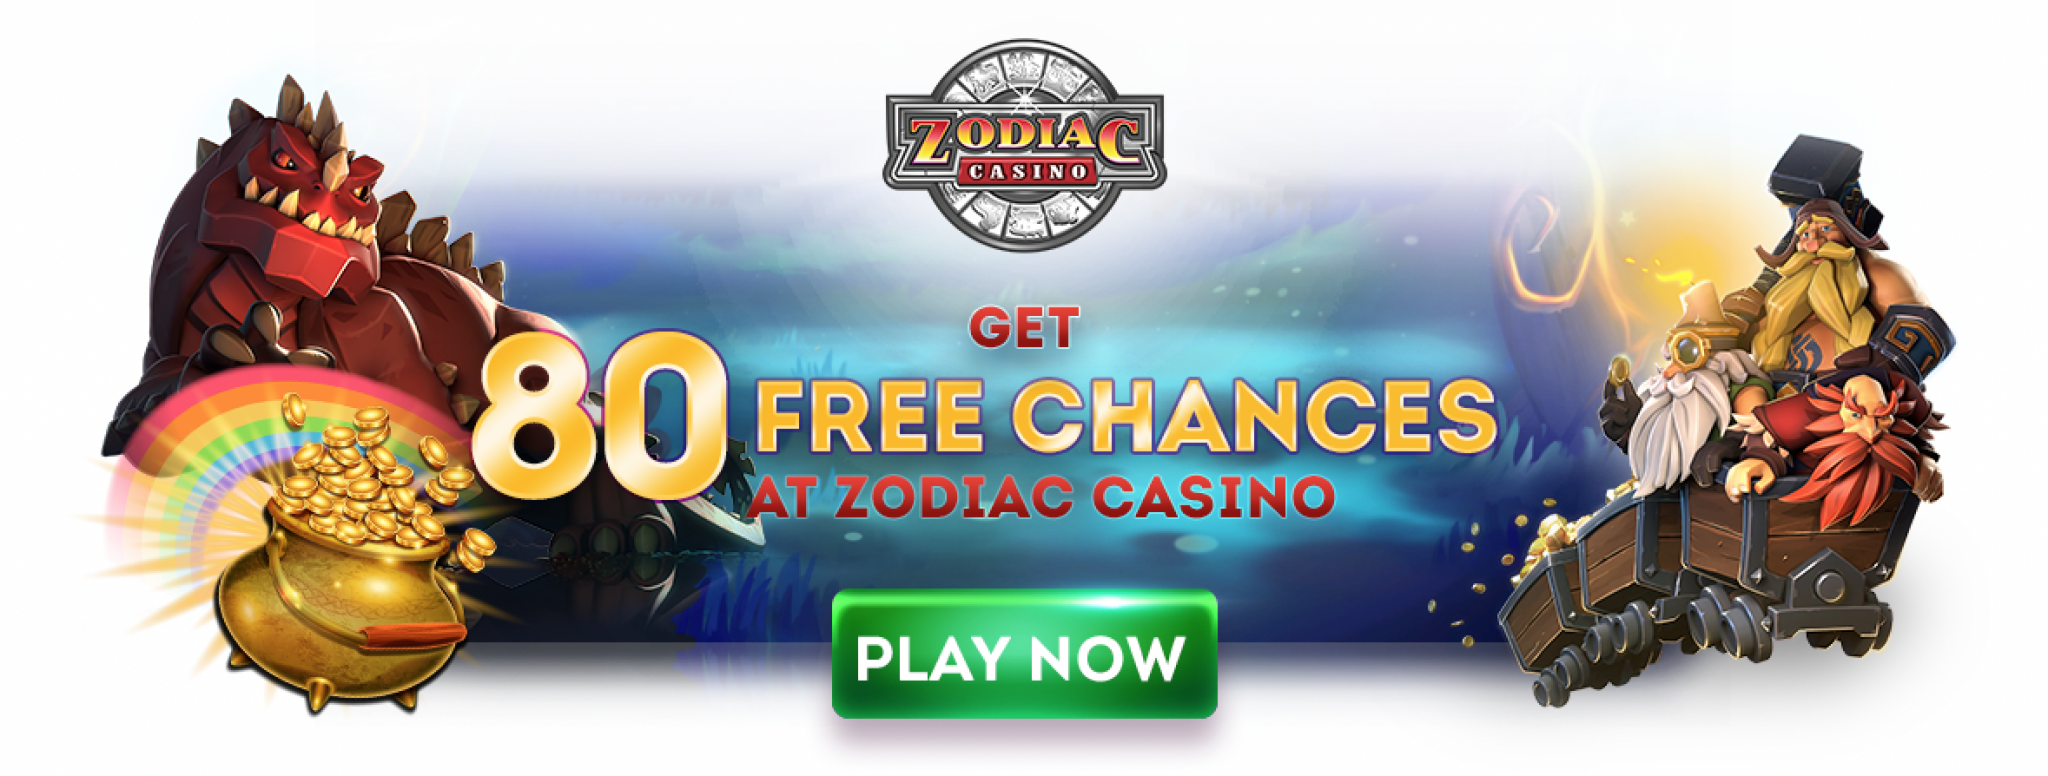 Zodiac Gambling enterprise Opinion